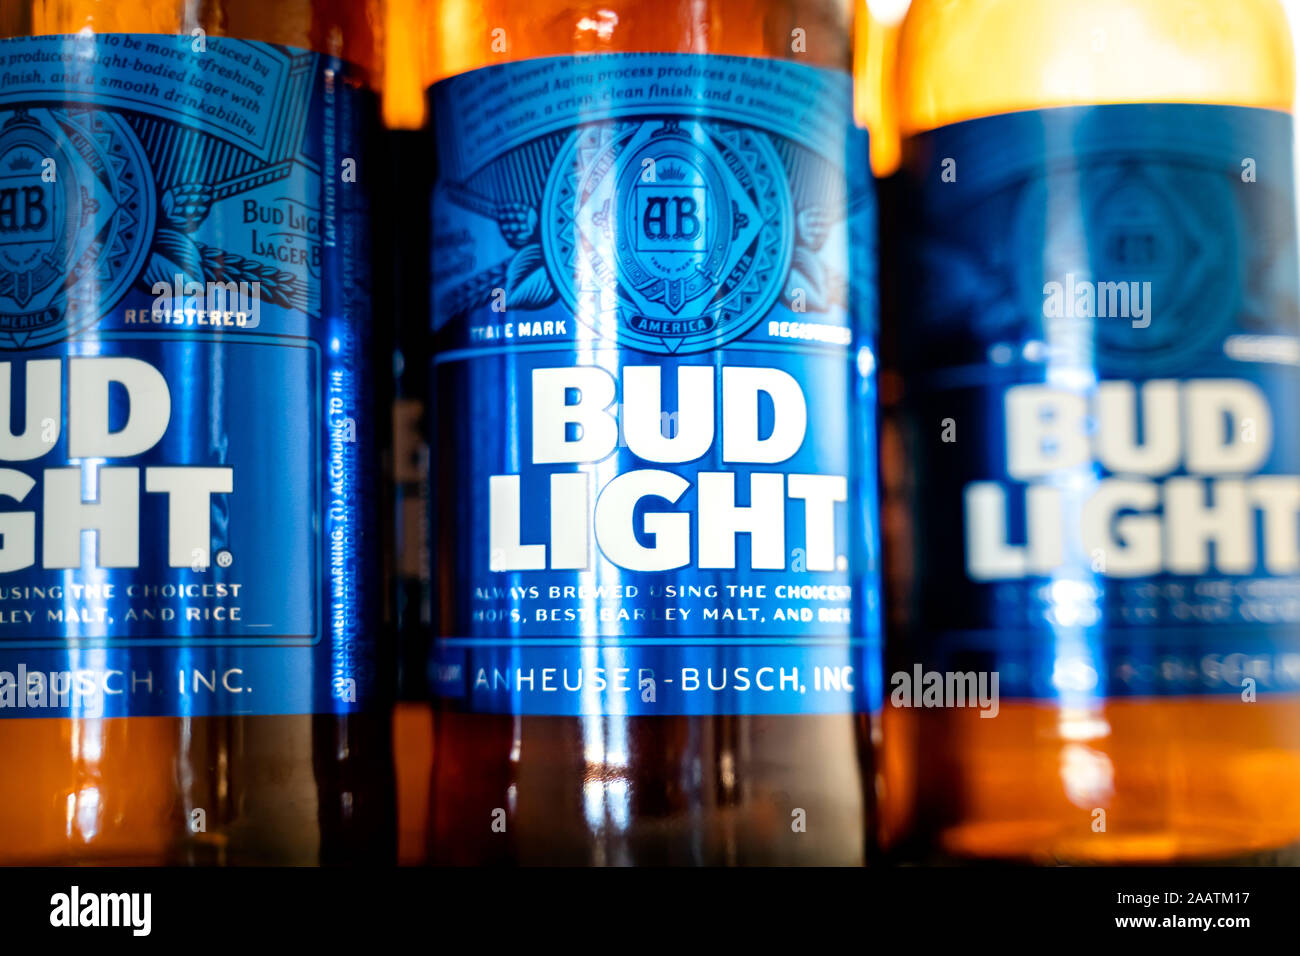 Пиво с синей этикеткой. Пиво с голубой этикеткой. Бутылочное пиво с голубой этикеткой. Пиво с голубой этикеткой в стекле. Этикетка бутылки с пивом Bugl Light.